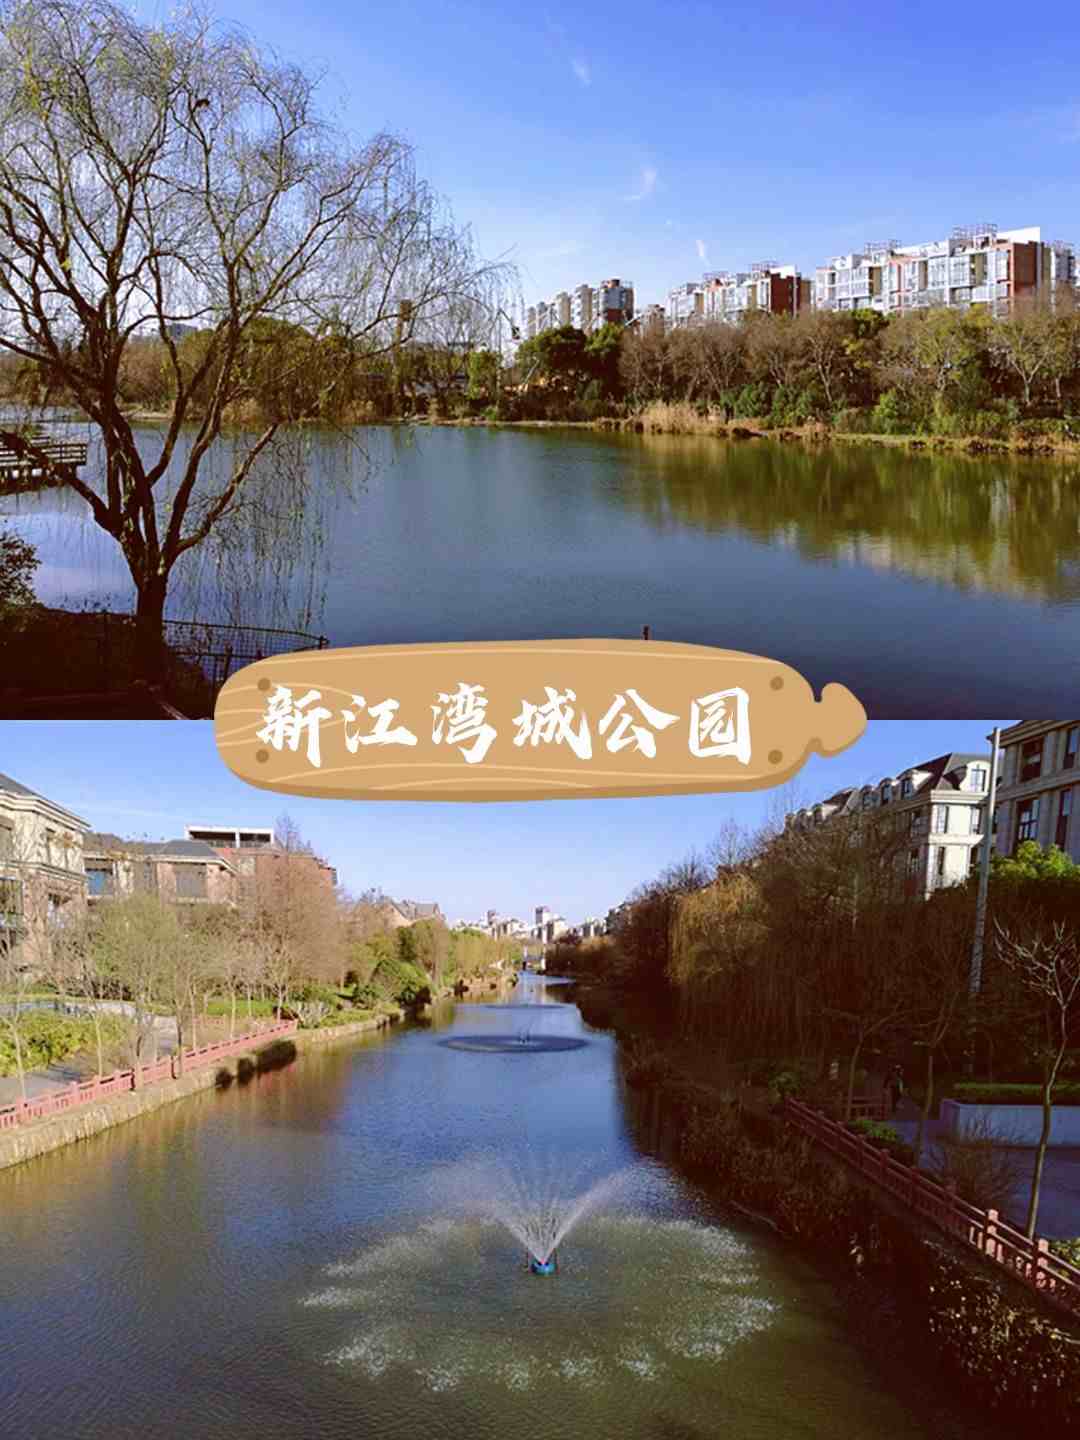 遇见美好目的地，上海杨浦新江湾城公园